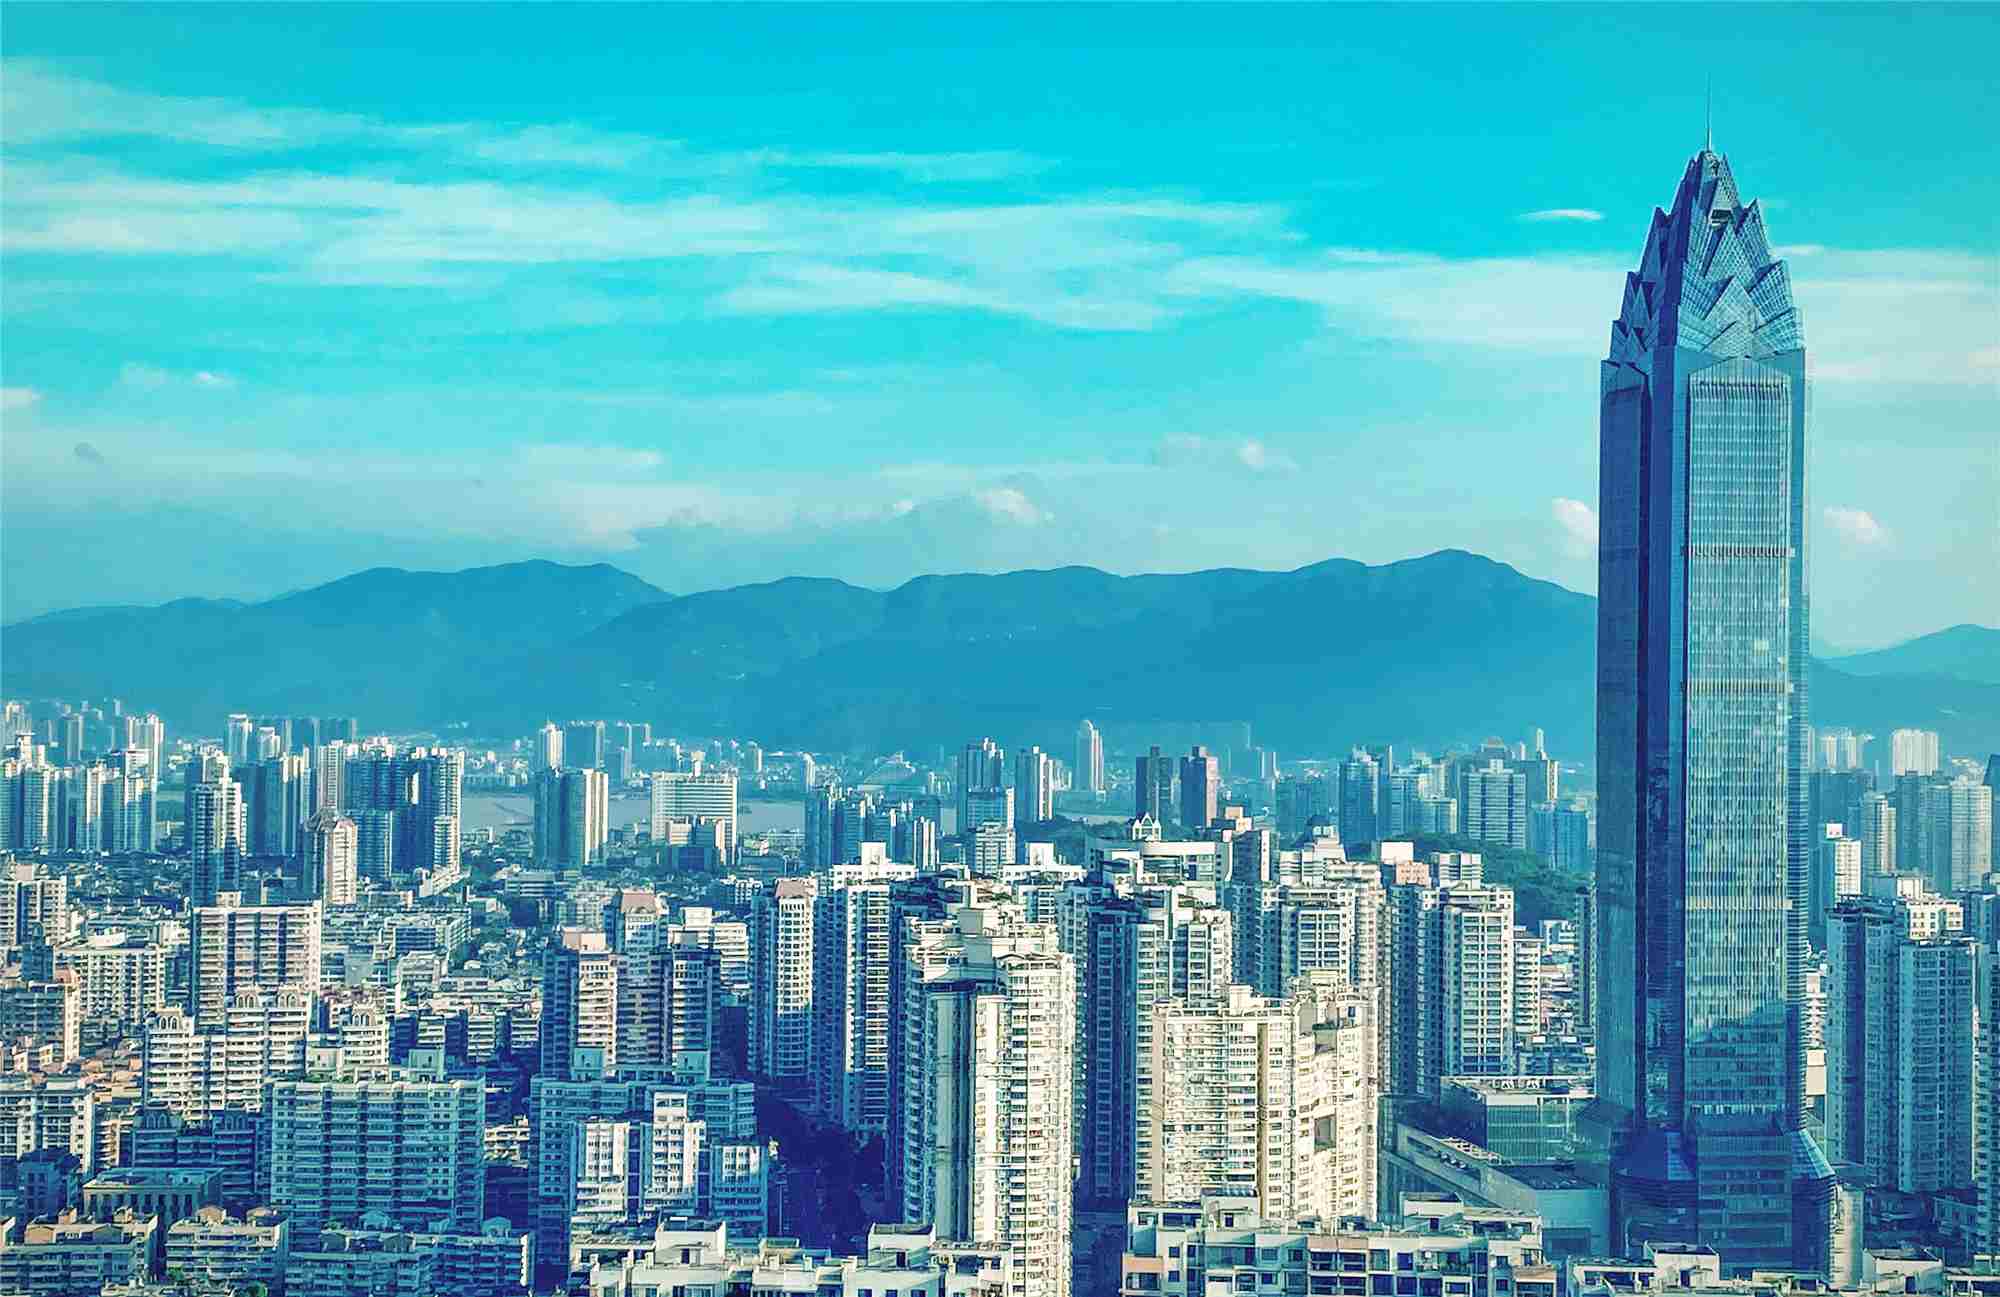 Ciudad de emprendedores: Wenzhou, centro de la economía privada de China